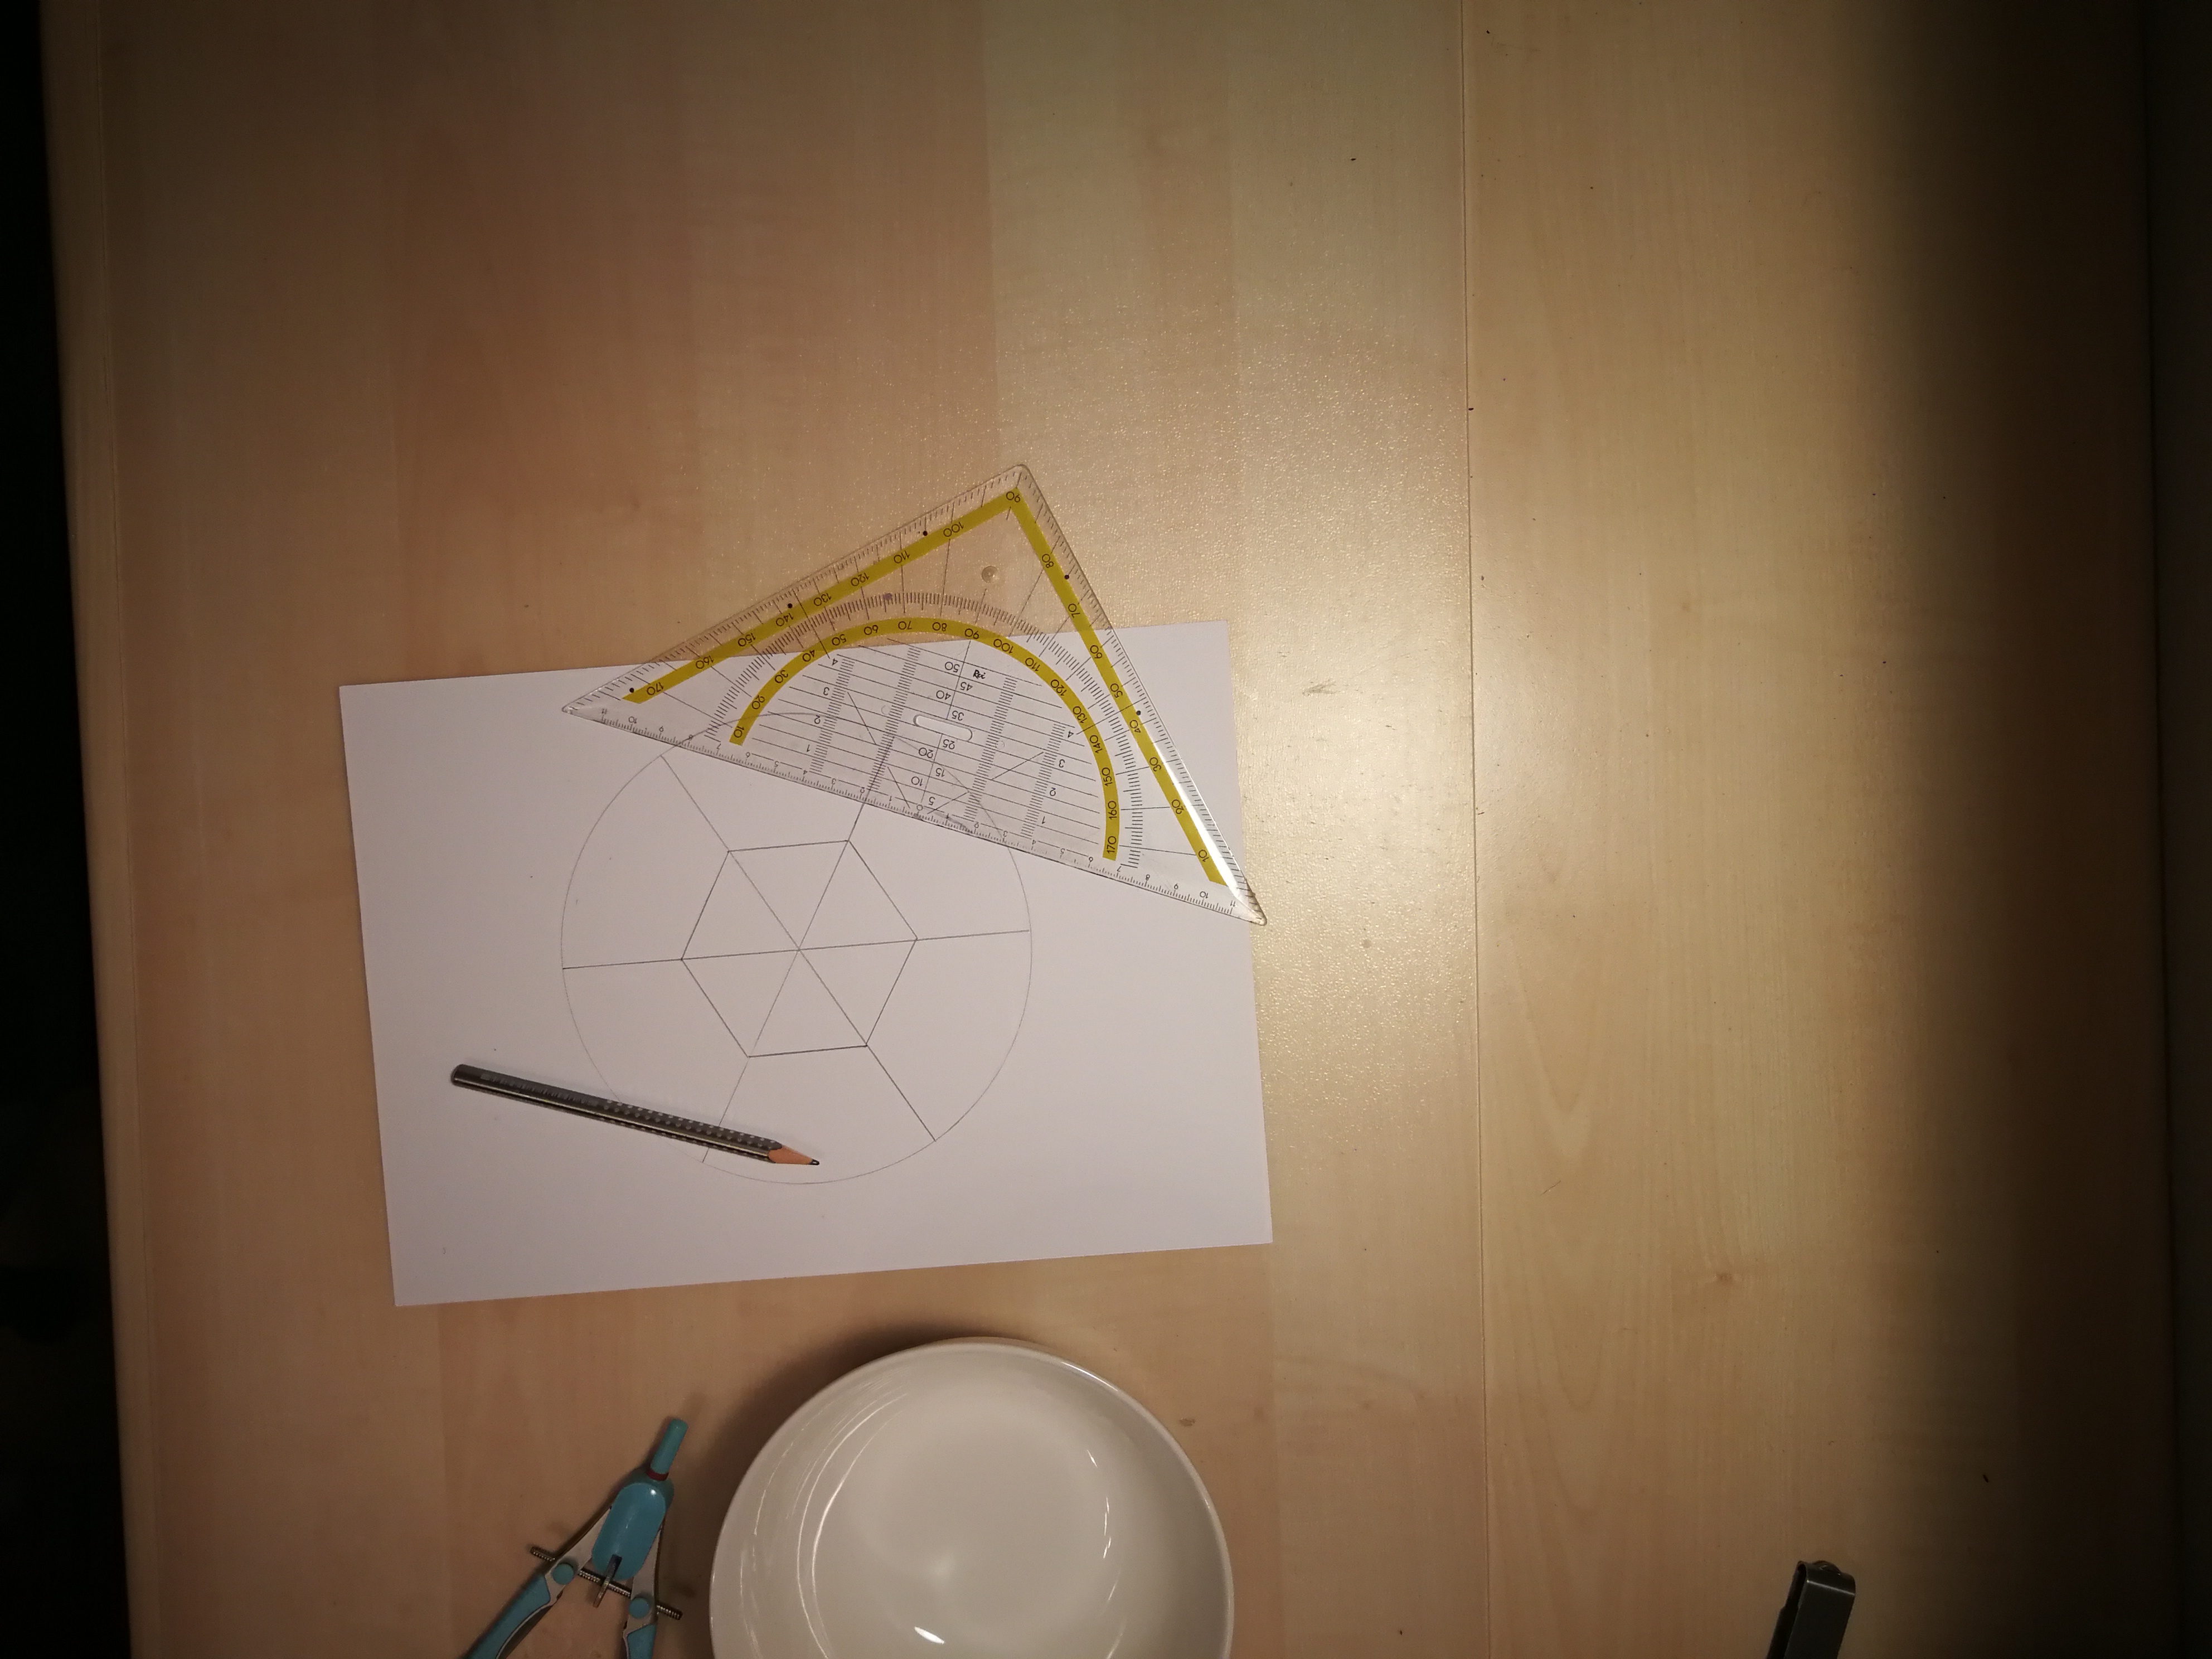 Geodreieck, Bleistift, Papier mit aufgezeichnetem Kreis und darin ein Sechseck